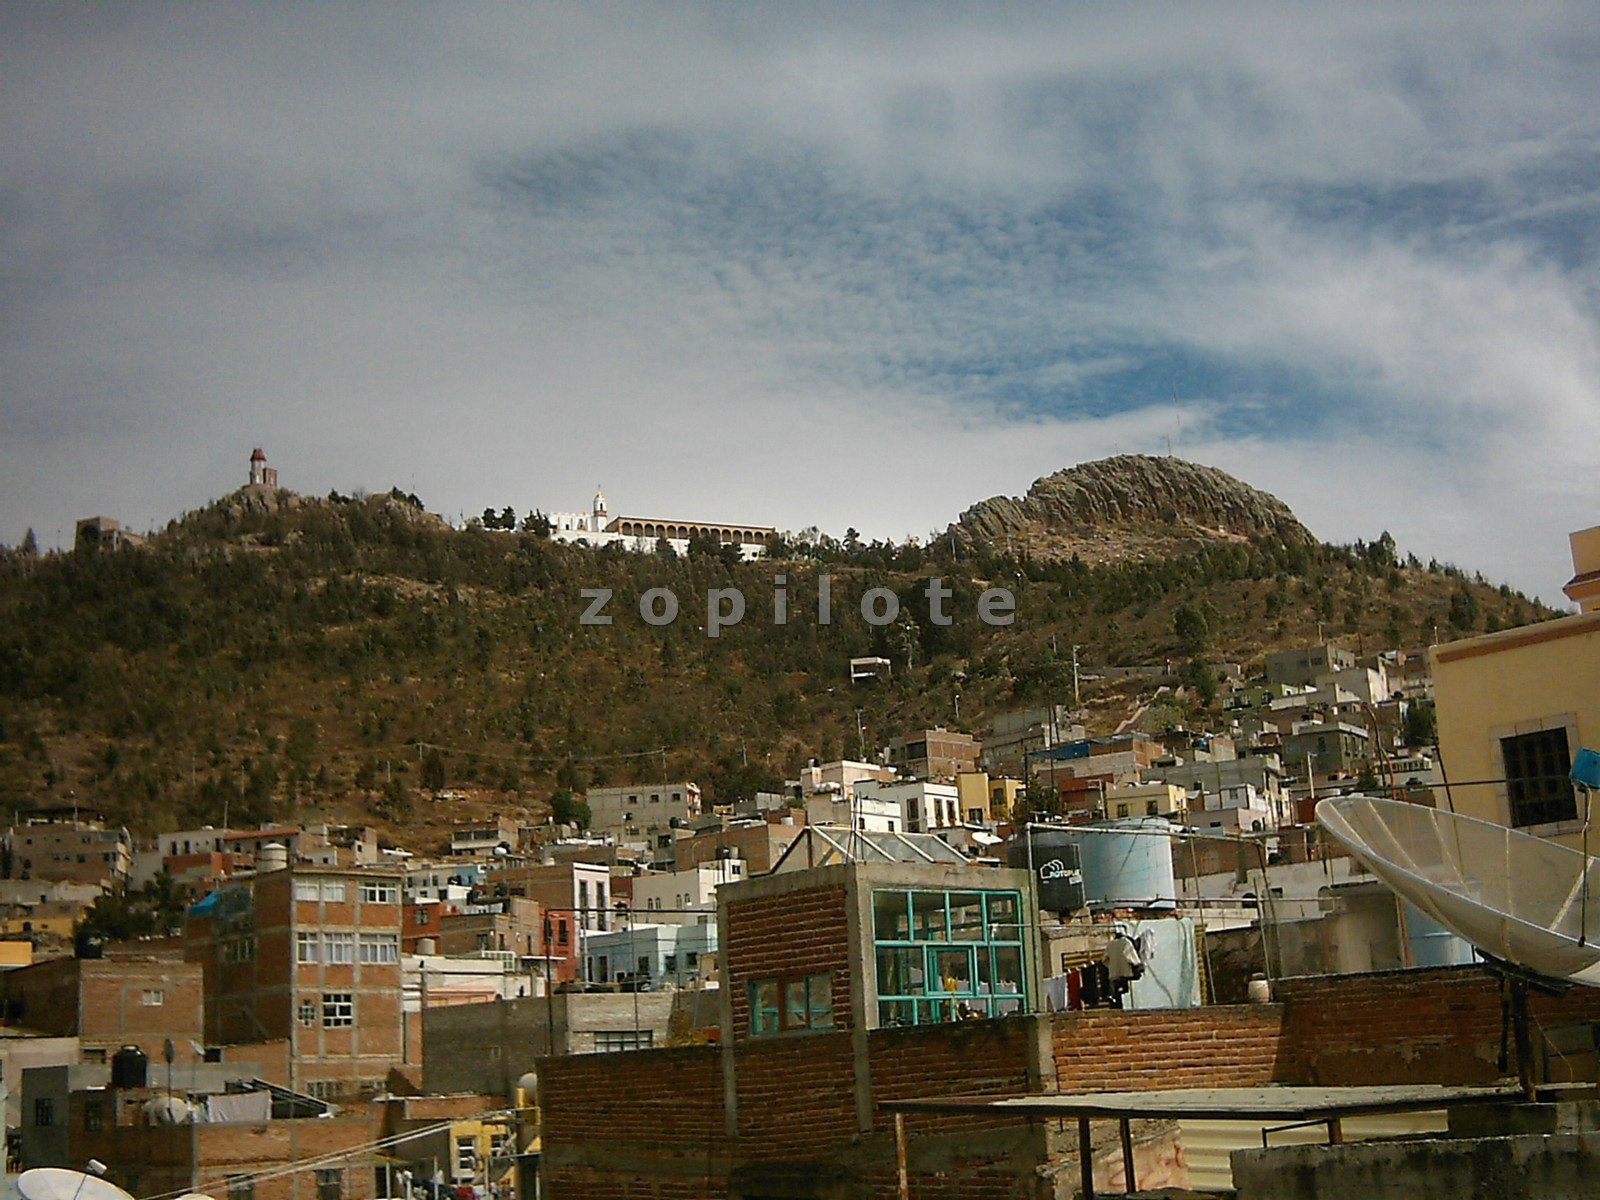 Zacatecas-La Buffa